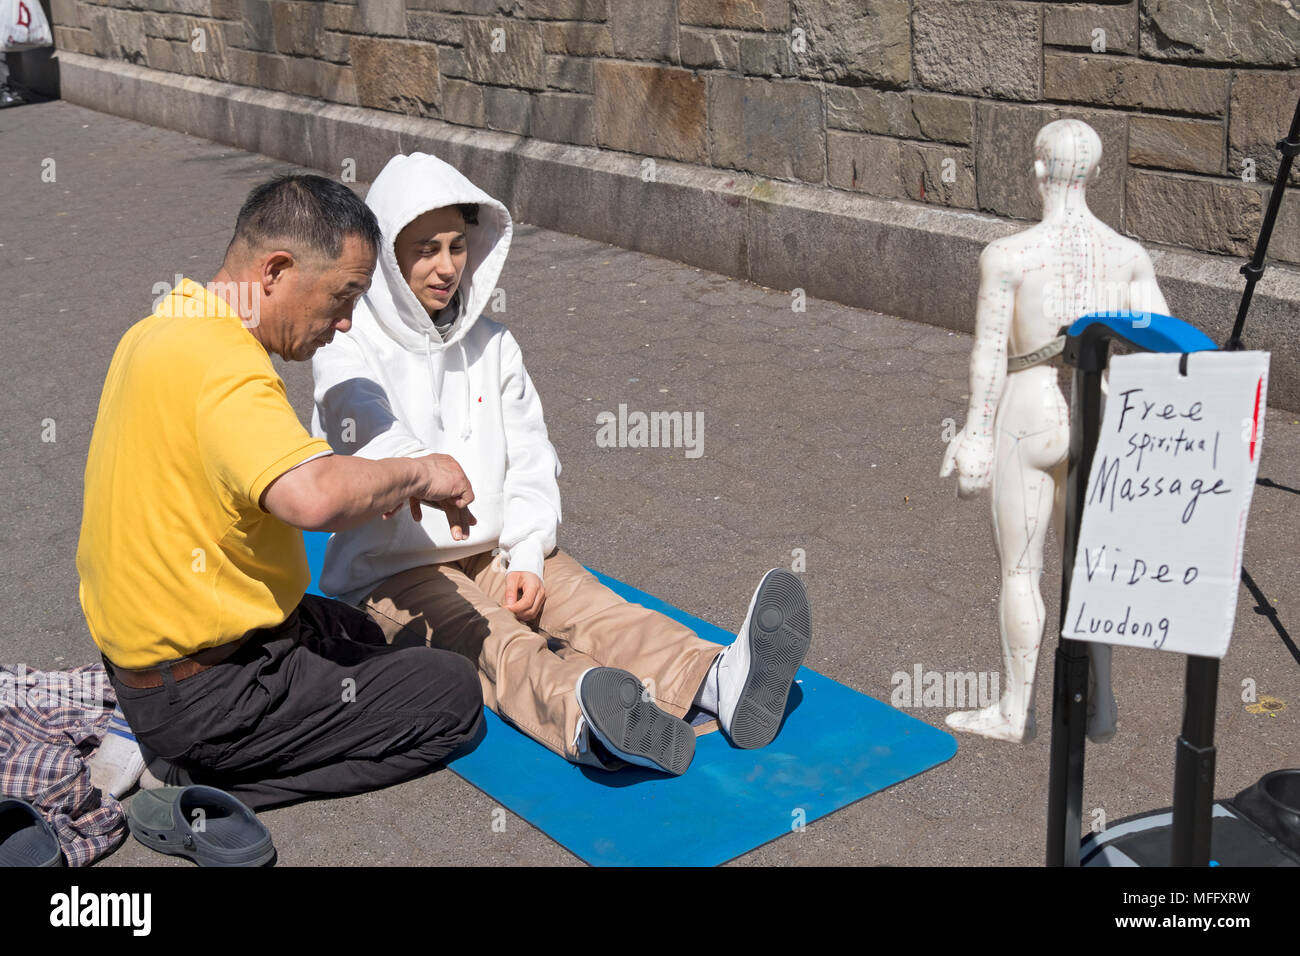 Luo Dong geben eine kostenlose Spirituelle Massage zu einer jungen Dame in einem Kapuzen-sweatshirt. Im Union Square Park, Manhattan, New York City. Stockfoto